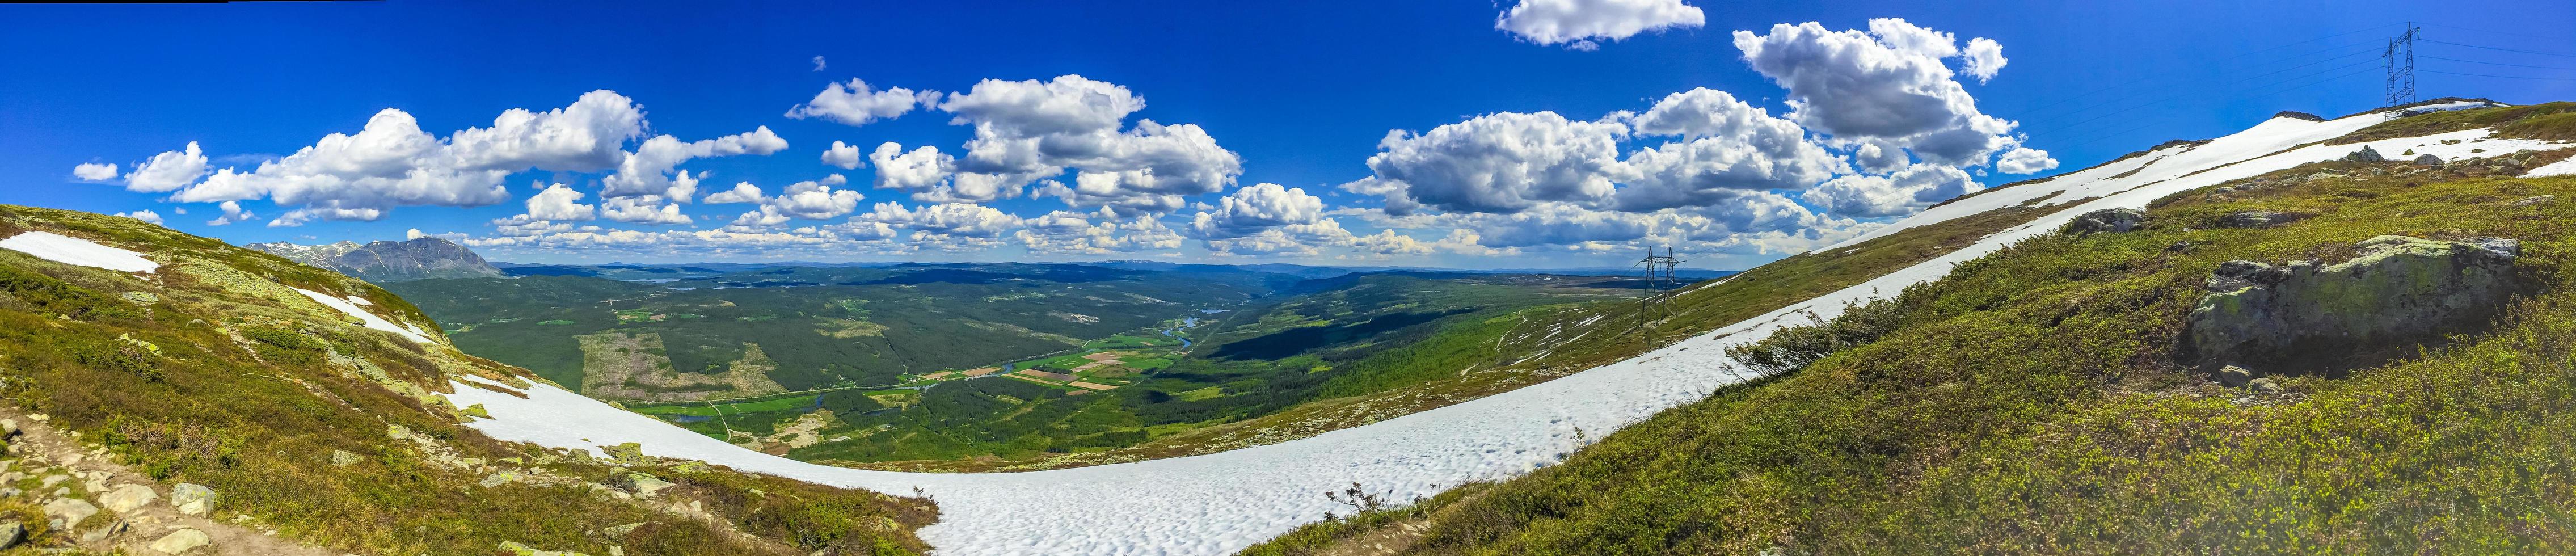 schönes talpanorama norwegen hemsedal hydalen mit eingeschneiten bergen. foto